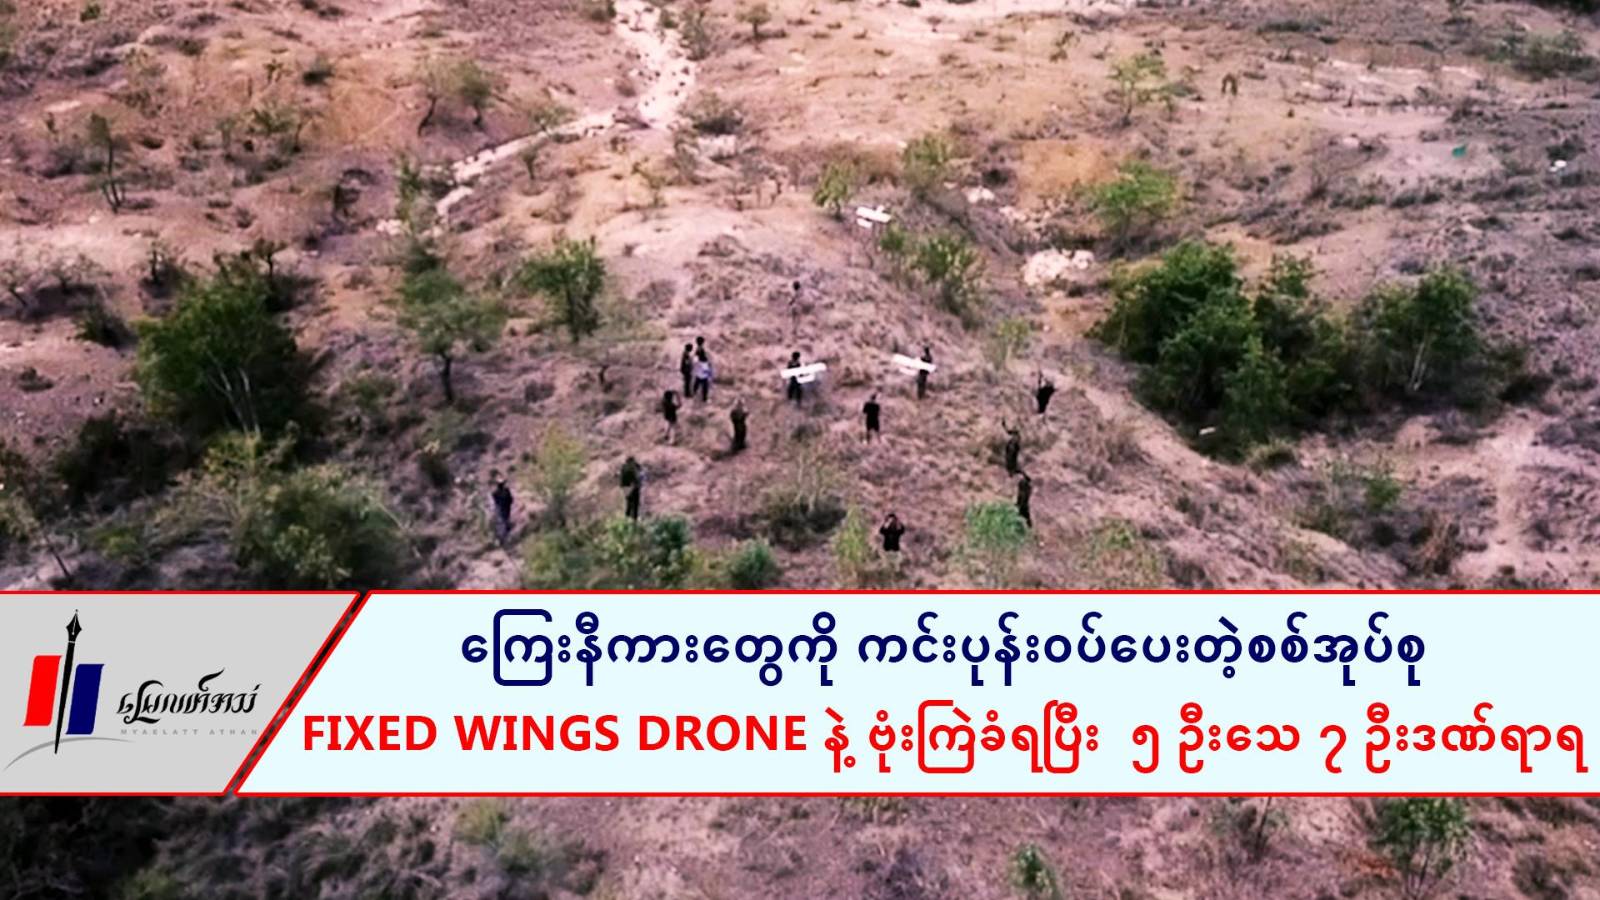 ကြေးနီကားတွေကို ကင်းပုန်းဝပ်ပေးတဲ့စစ်အုပ်စု Fixed Wings Drone နဲ့ ဗုံးကြဲခံရပြီး  ၅ ဦးသေ ၇ ဦးဒဏ်ရာရ (ရုပ်/သံ)